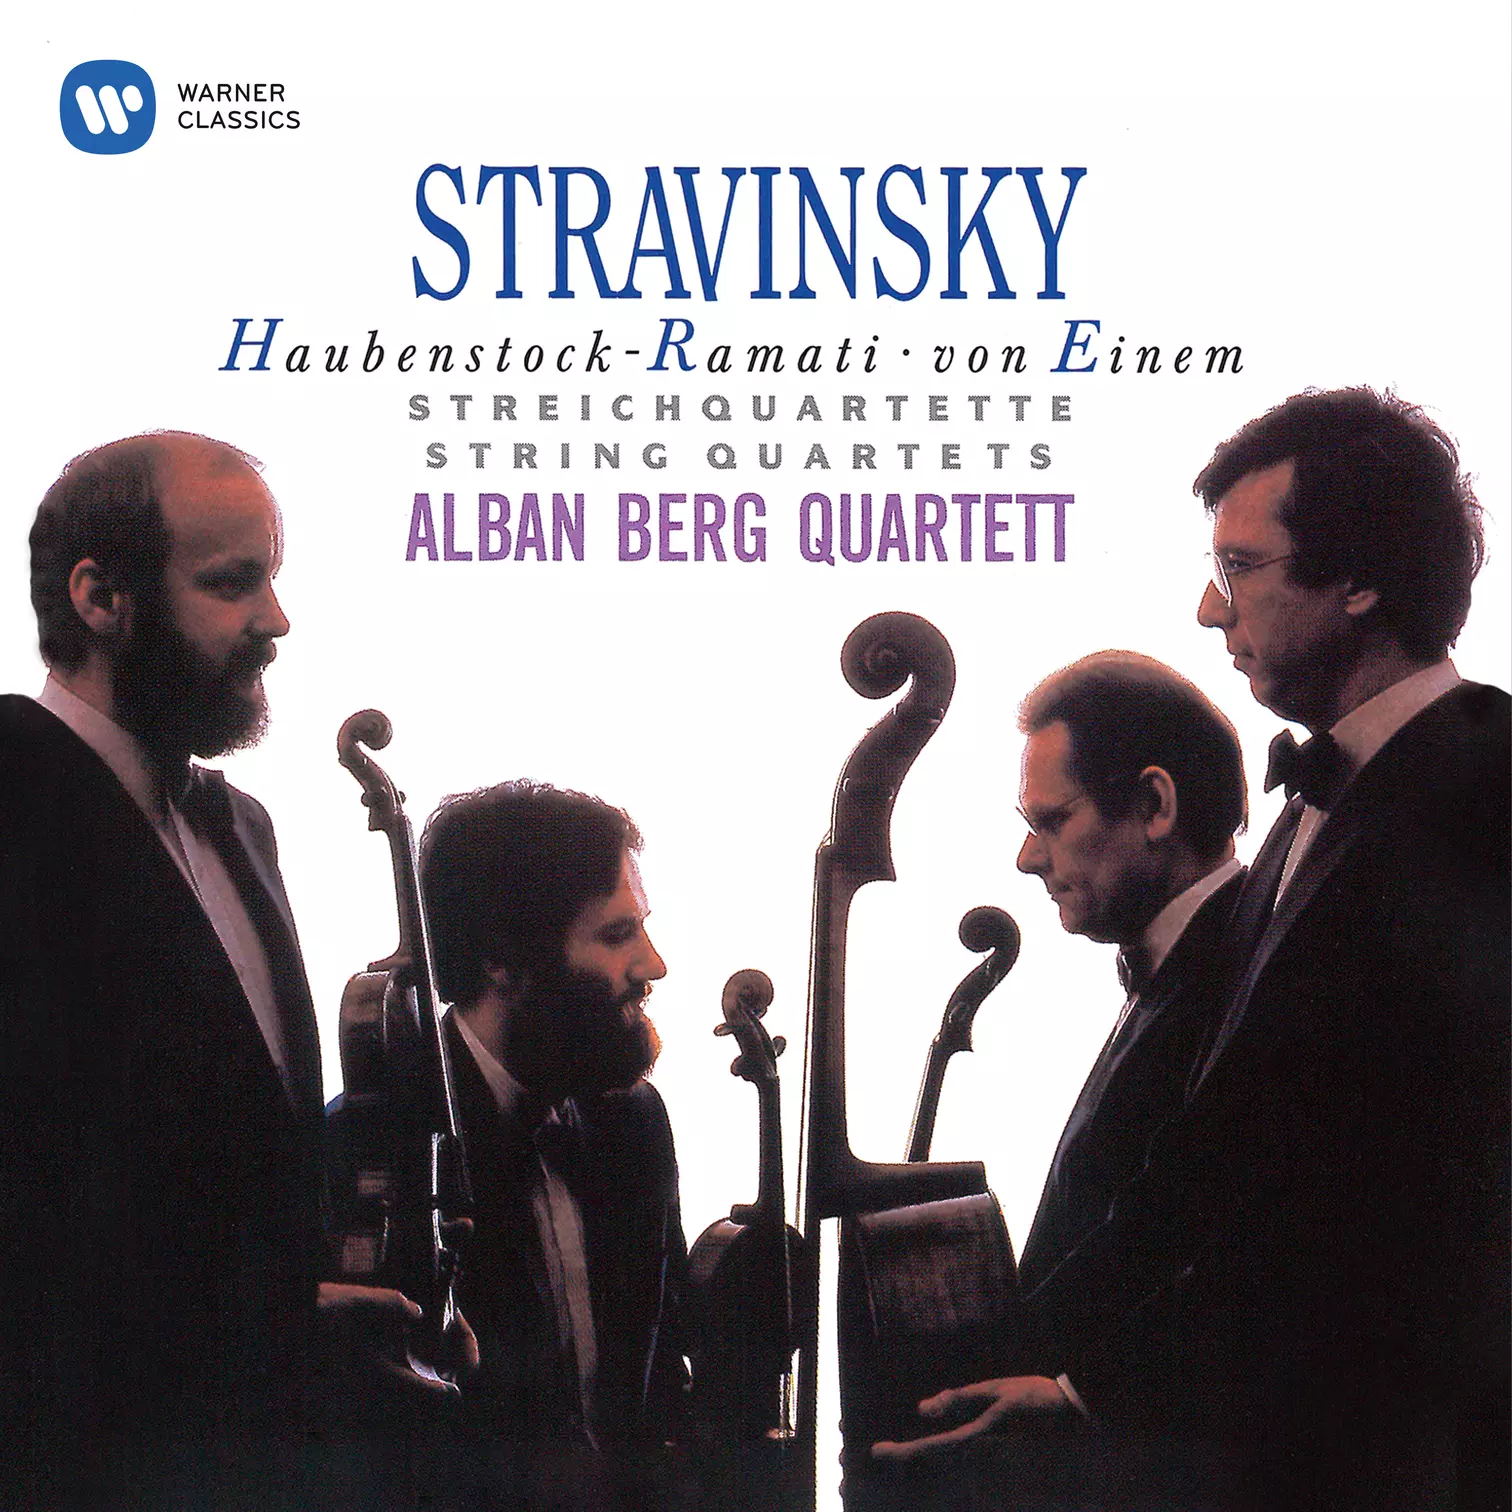 Stravinsky, Haubenstock-Ramati & von Einem: String Quartets